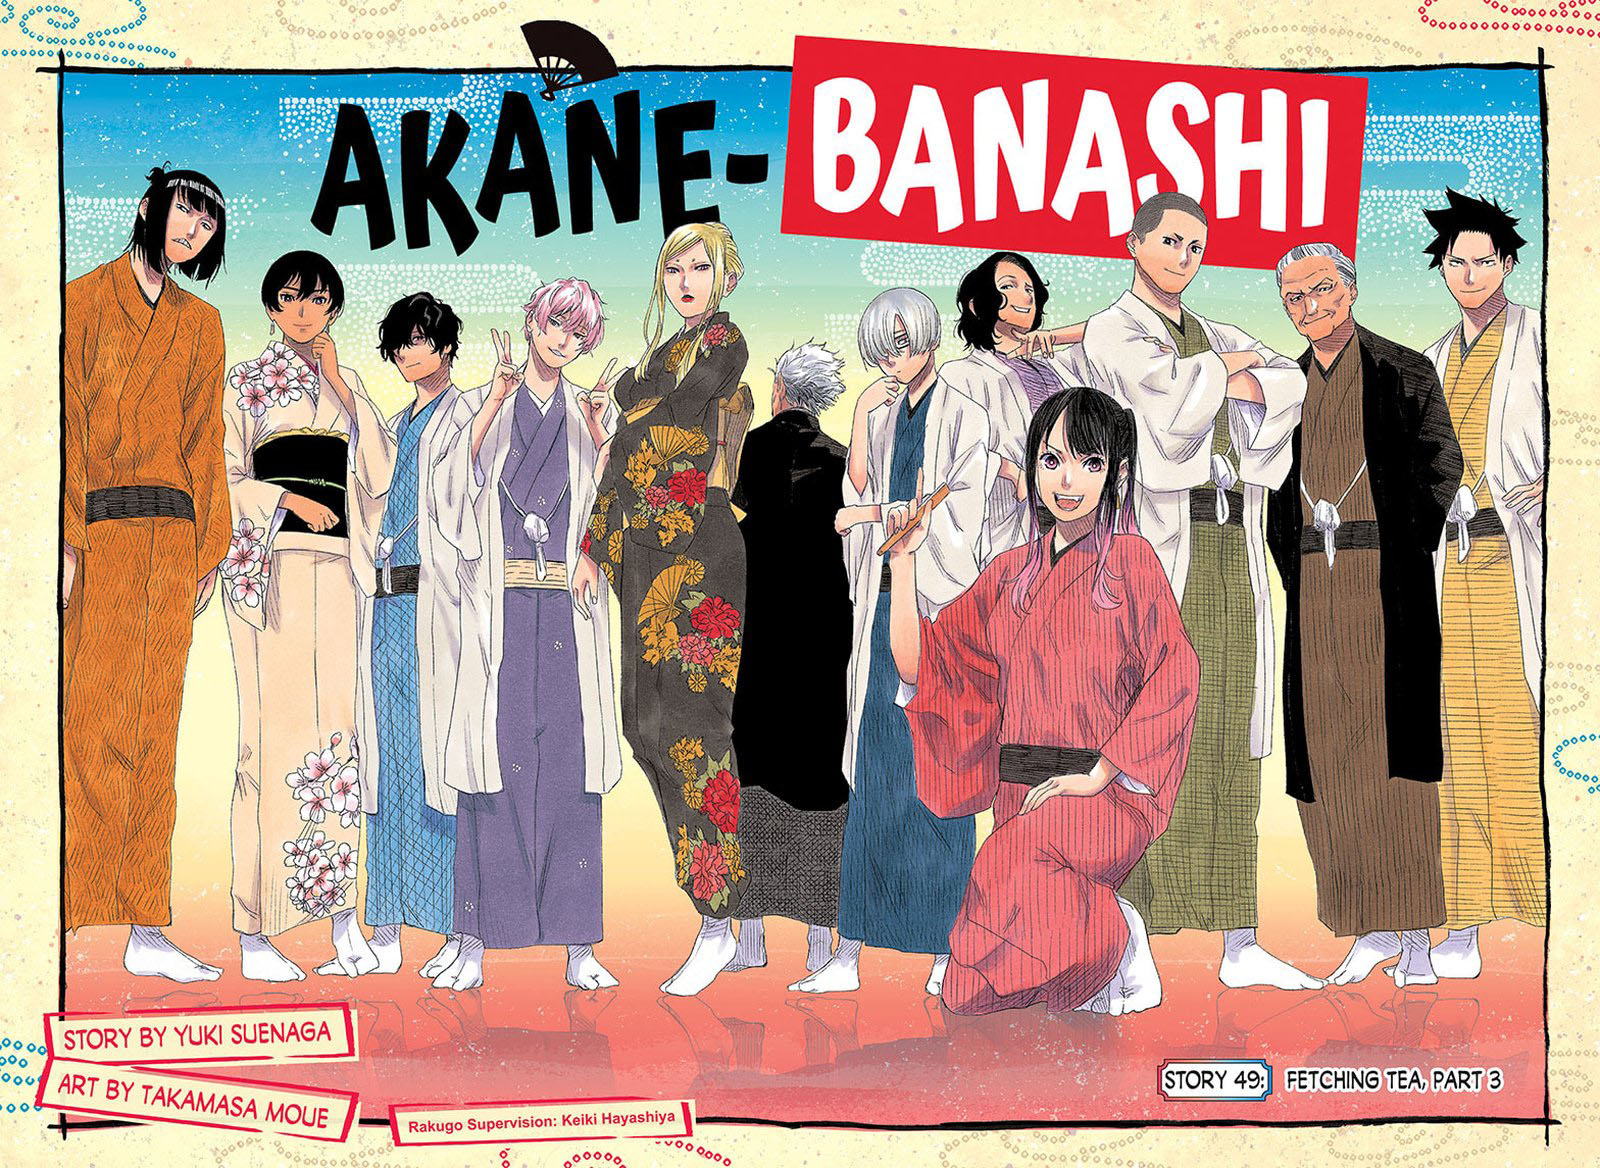 Akane Banashi 49 2